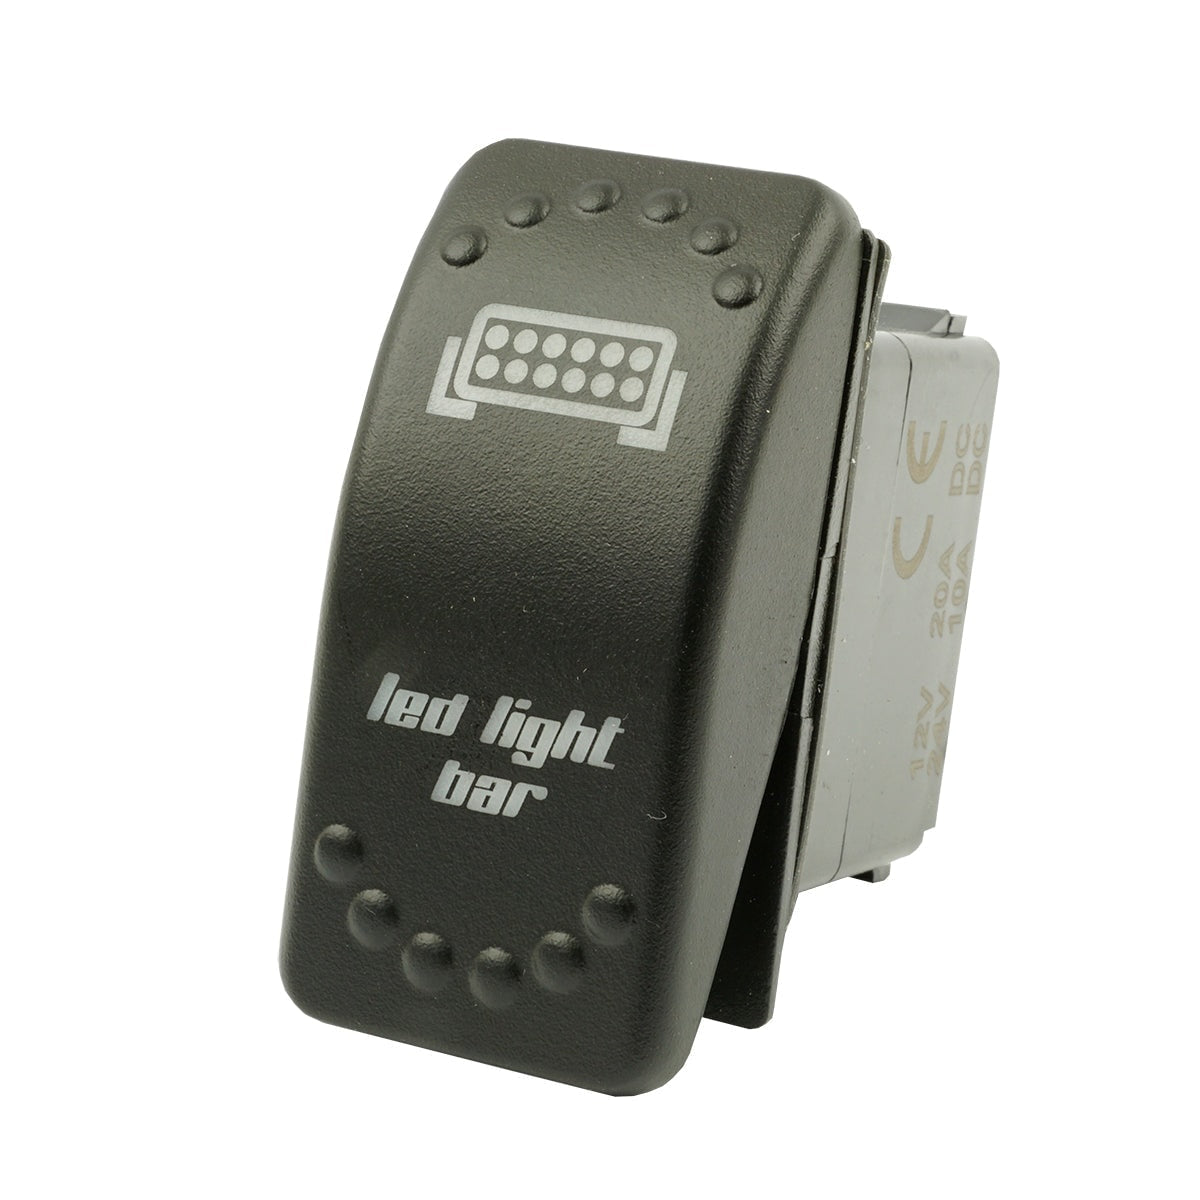 Kippschalter LED Light - LED Light Bar - Schalter